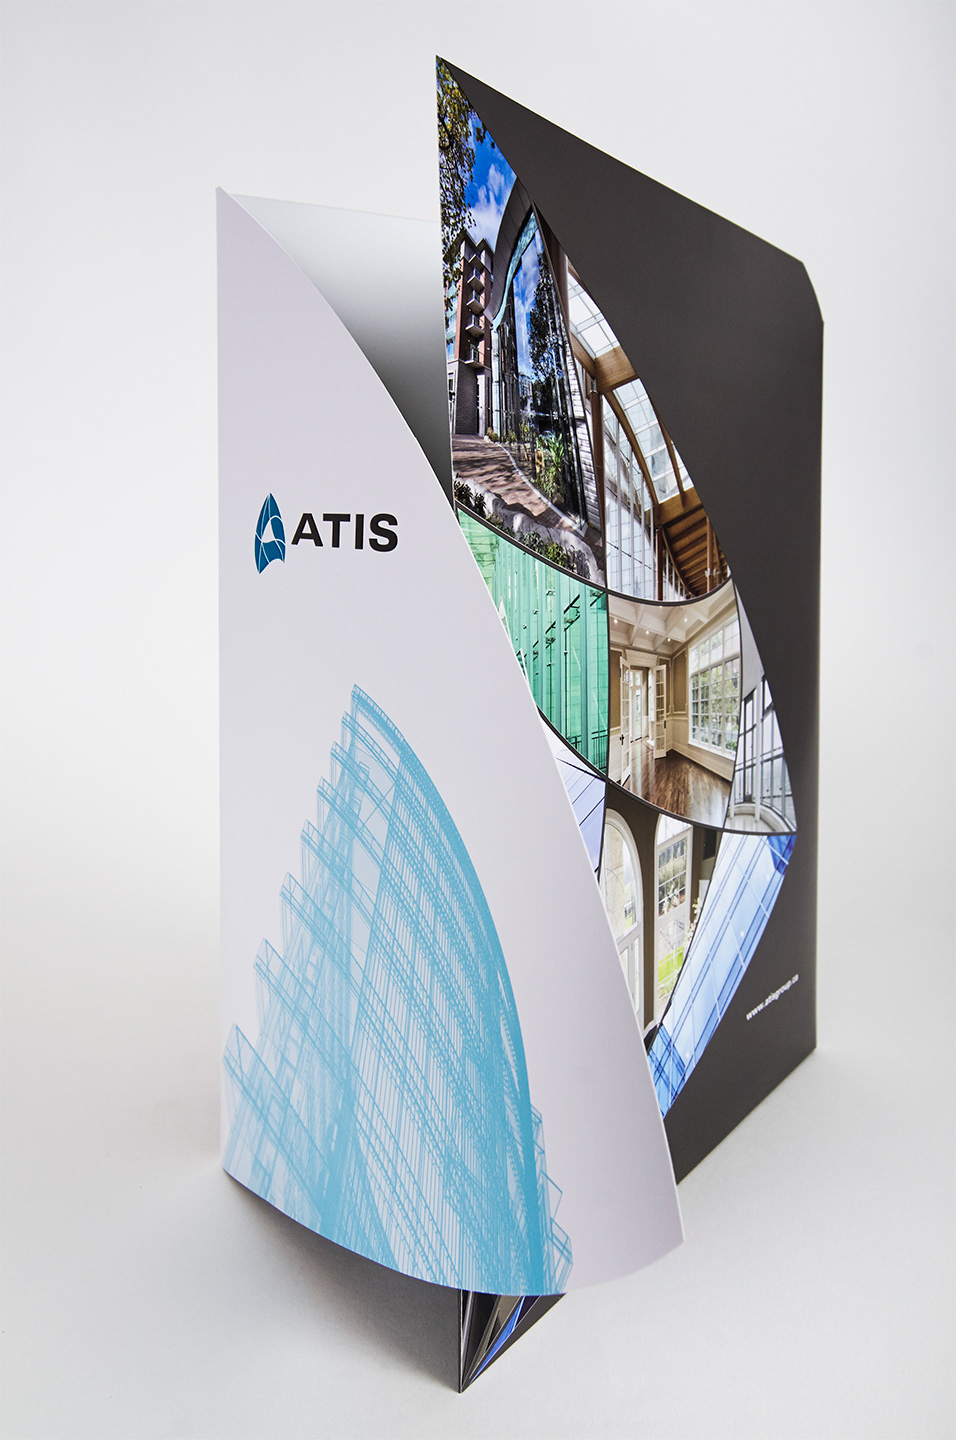 Atis Group corporate